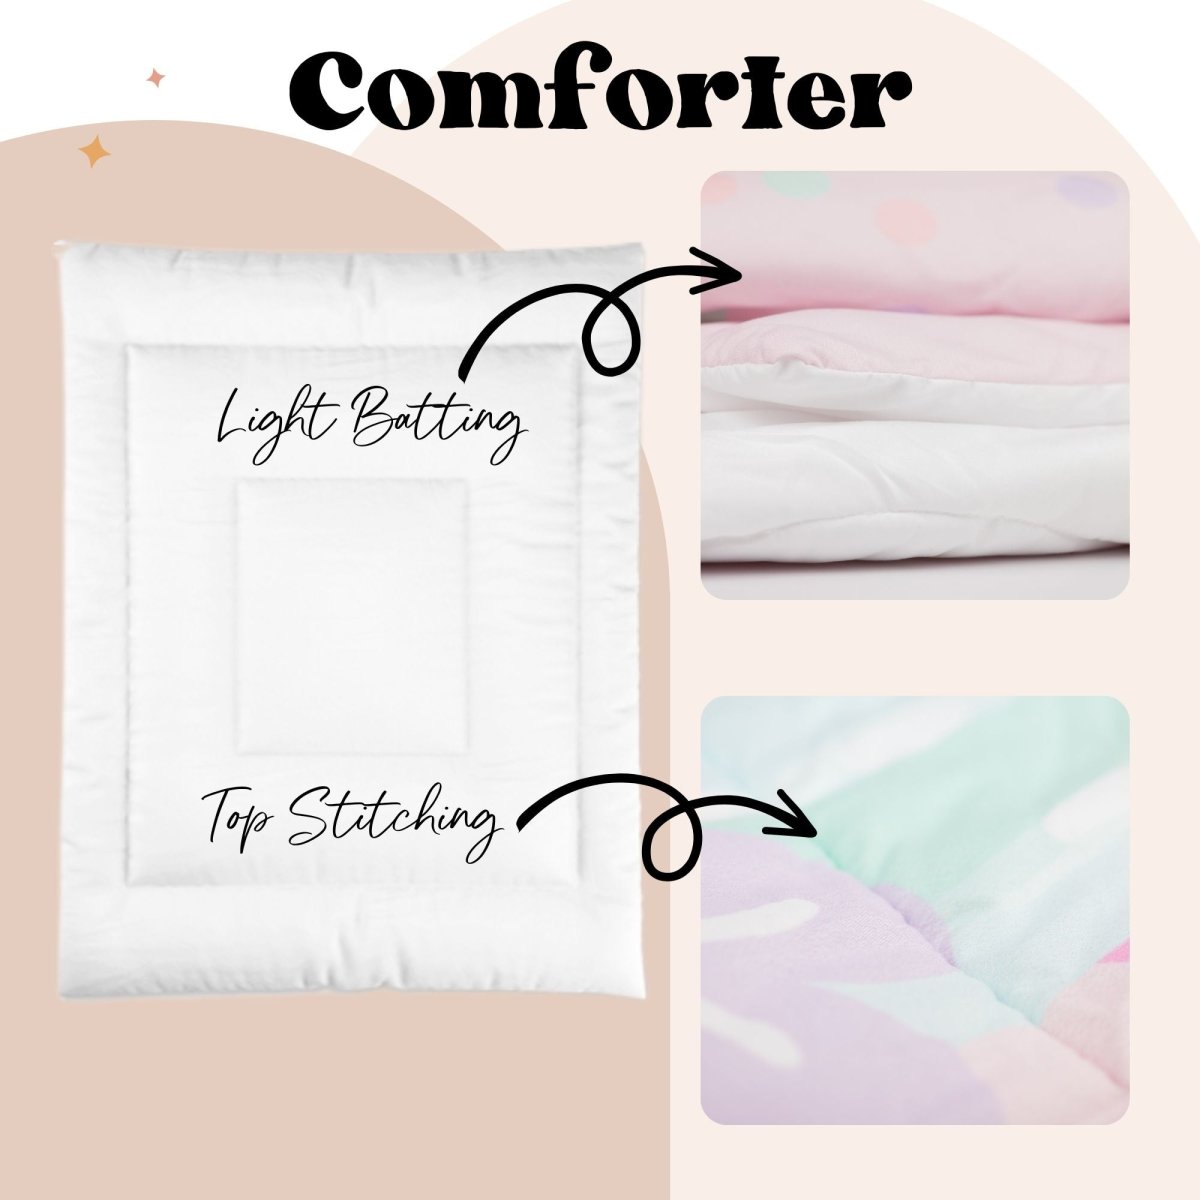 Going Green Personalized Kids Bedding Set (Comforter or Duvet Cover) - gender_boy, gender_girl, gender_neutral